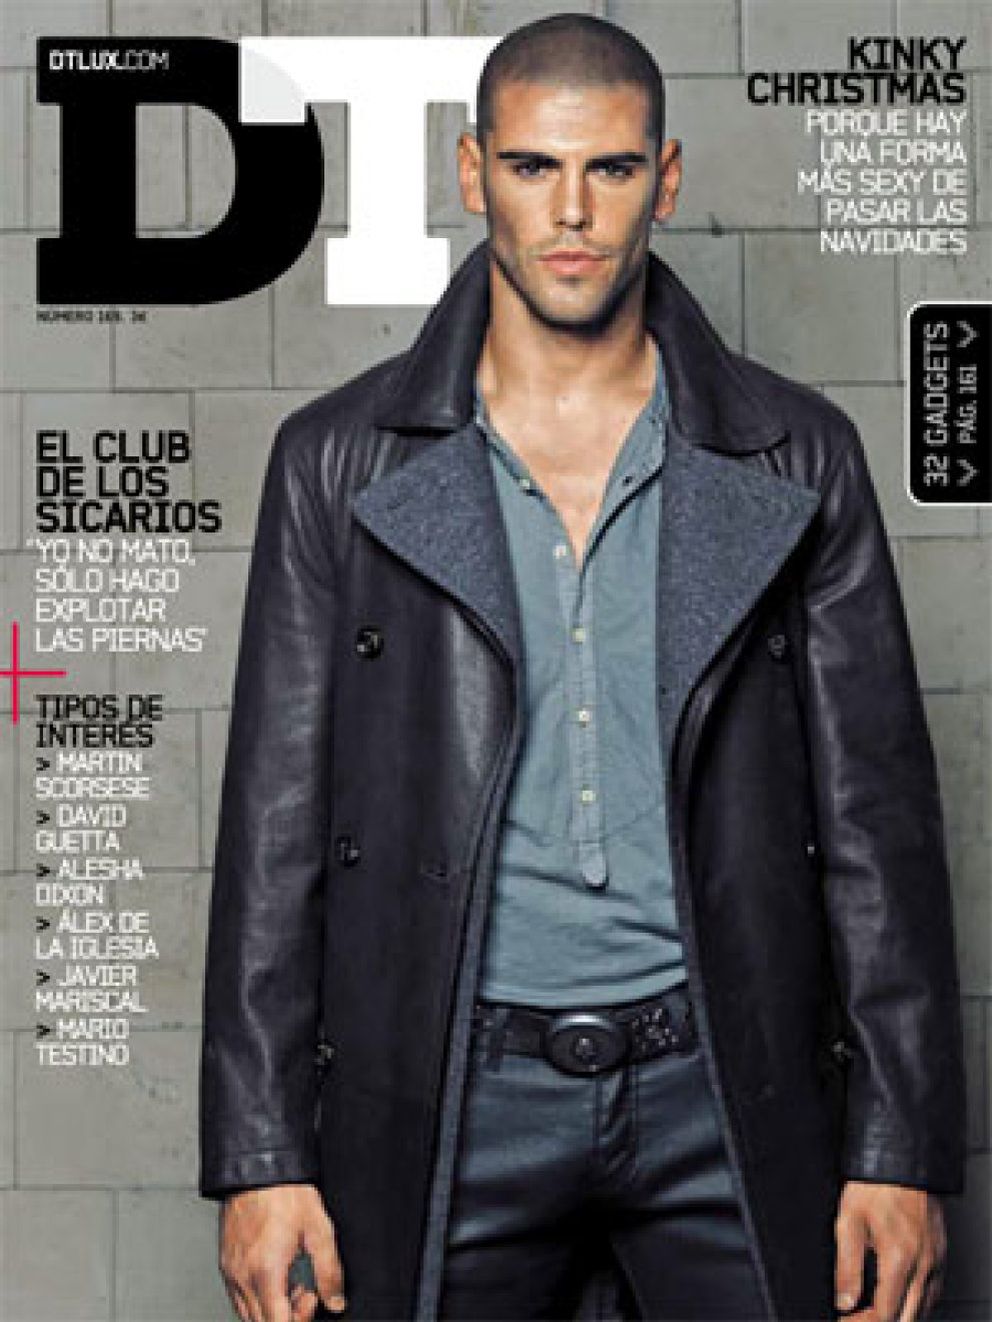 Foto: Valdés saca su lado sexy en la revista 'DT'